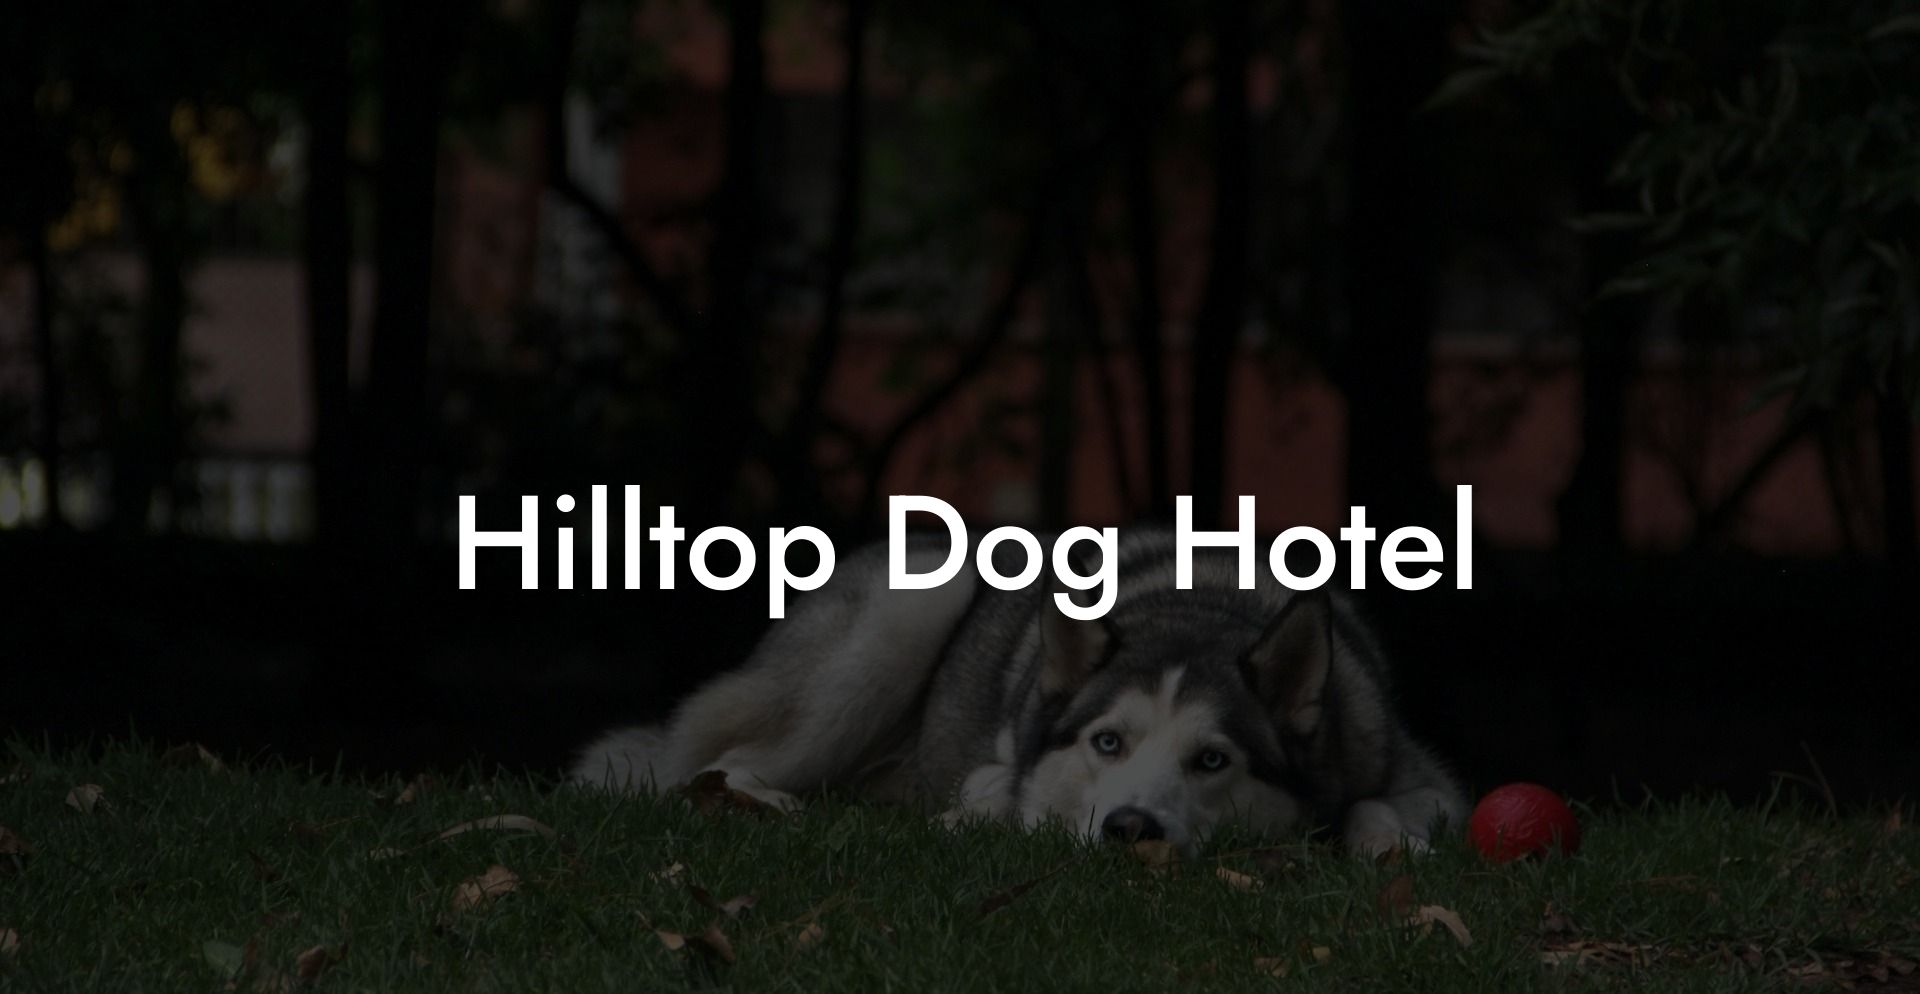 Hilltop Dog Hotel